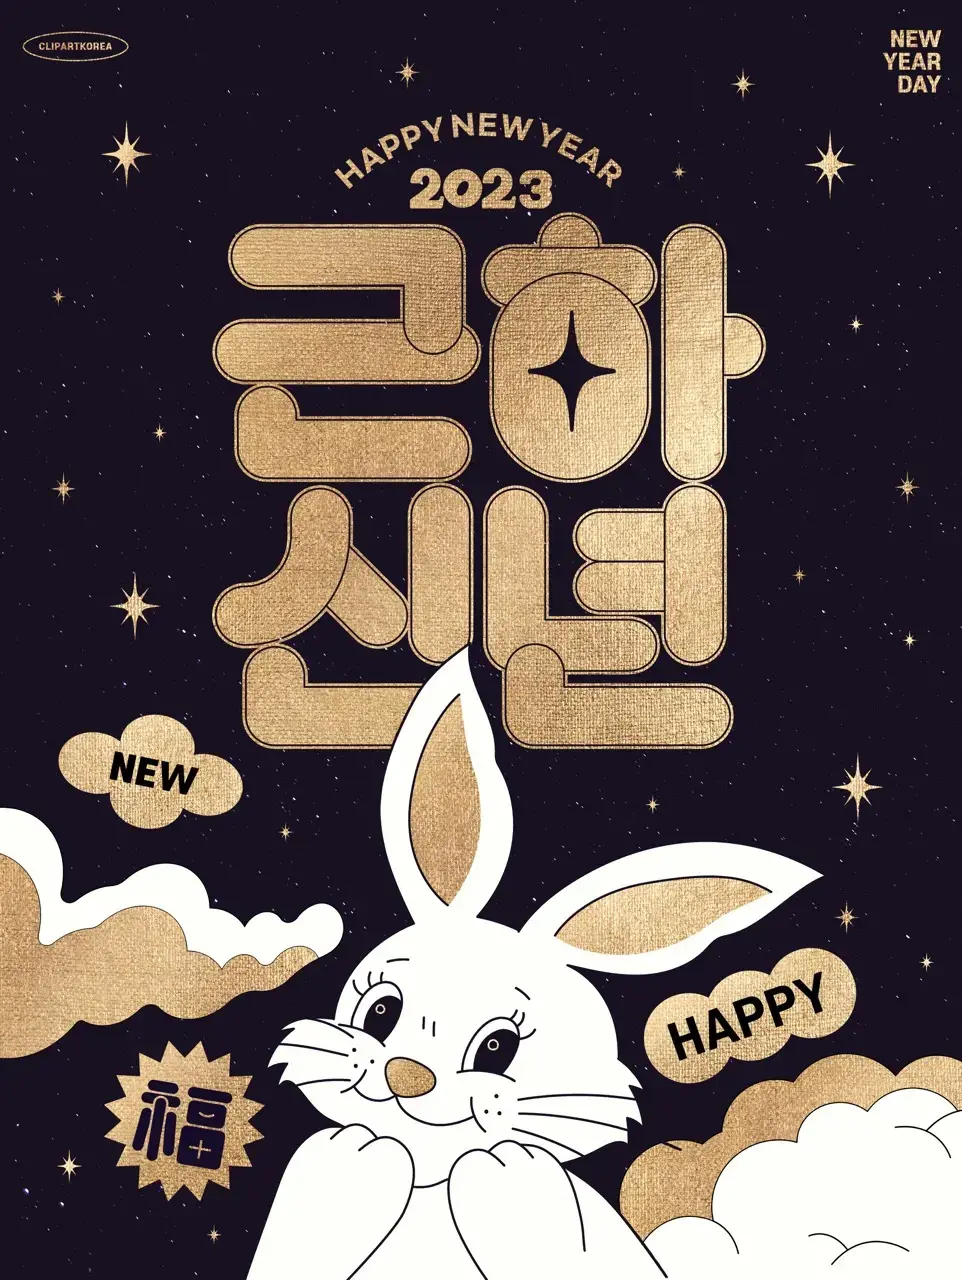 2023兔年潮流创意酸性趣味新年快乐春节节日插画海报PSD设计素材-爱设计爱分享c